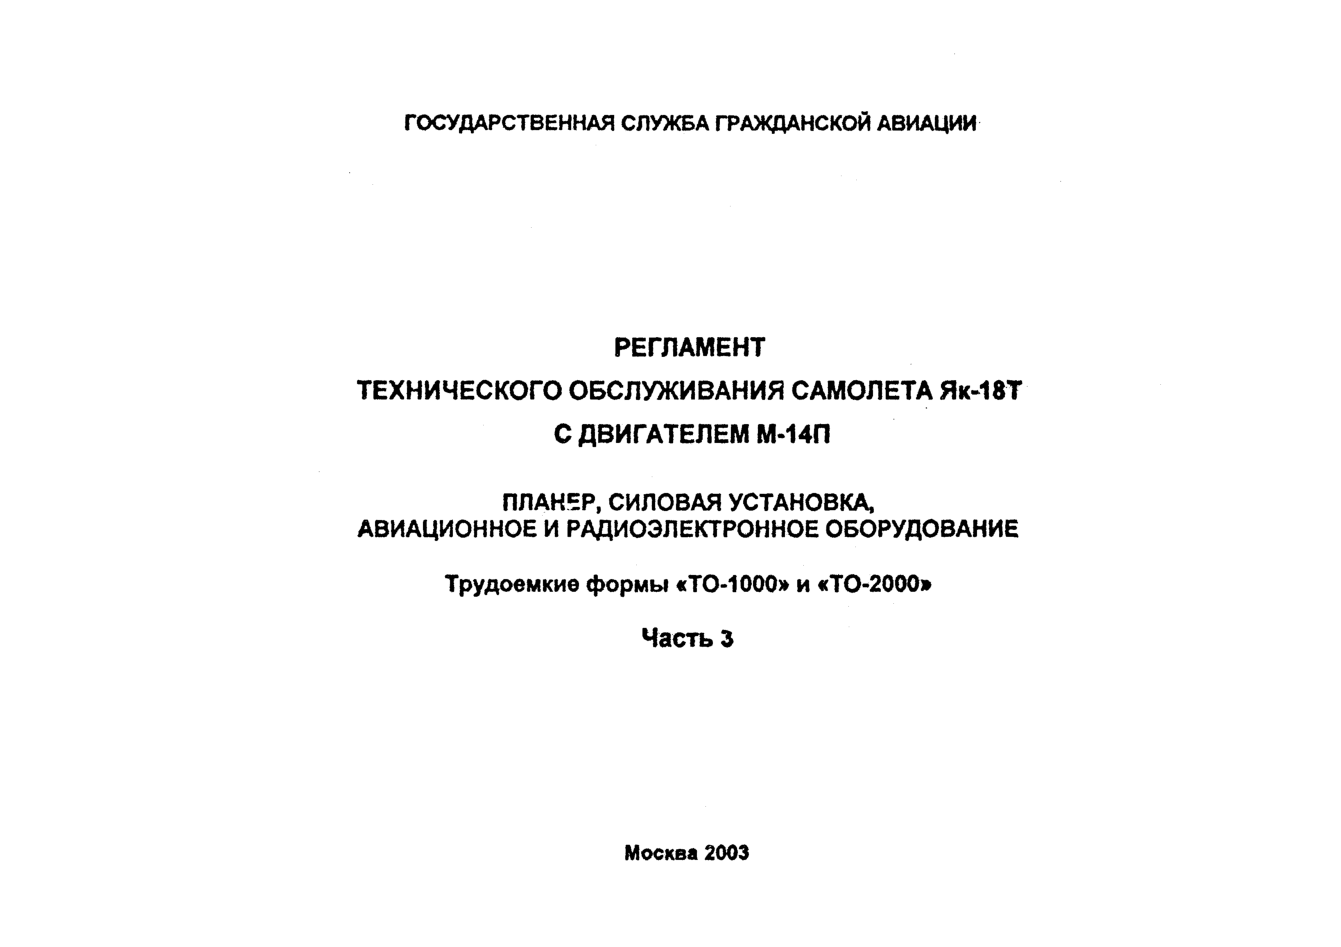 Як-18Т. Регламент технического обслуживания самолета Як-18Т с двигателем М-14П. Часть 3. 2003